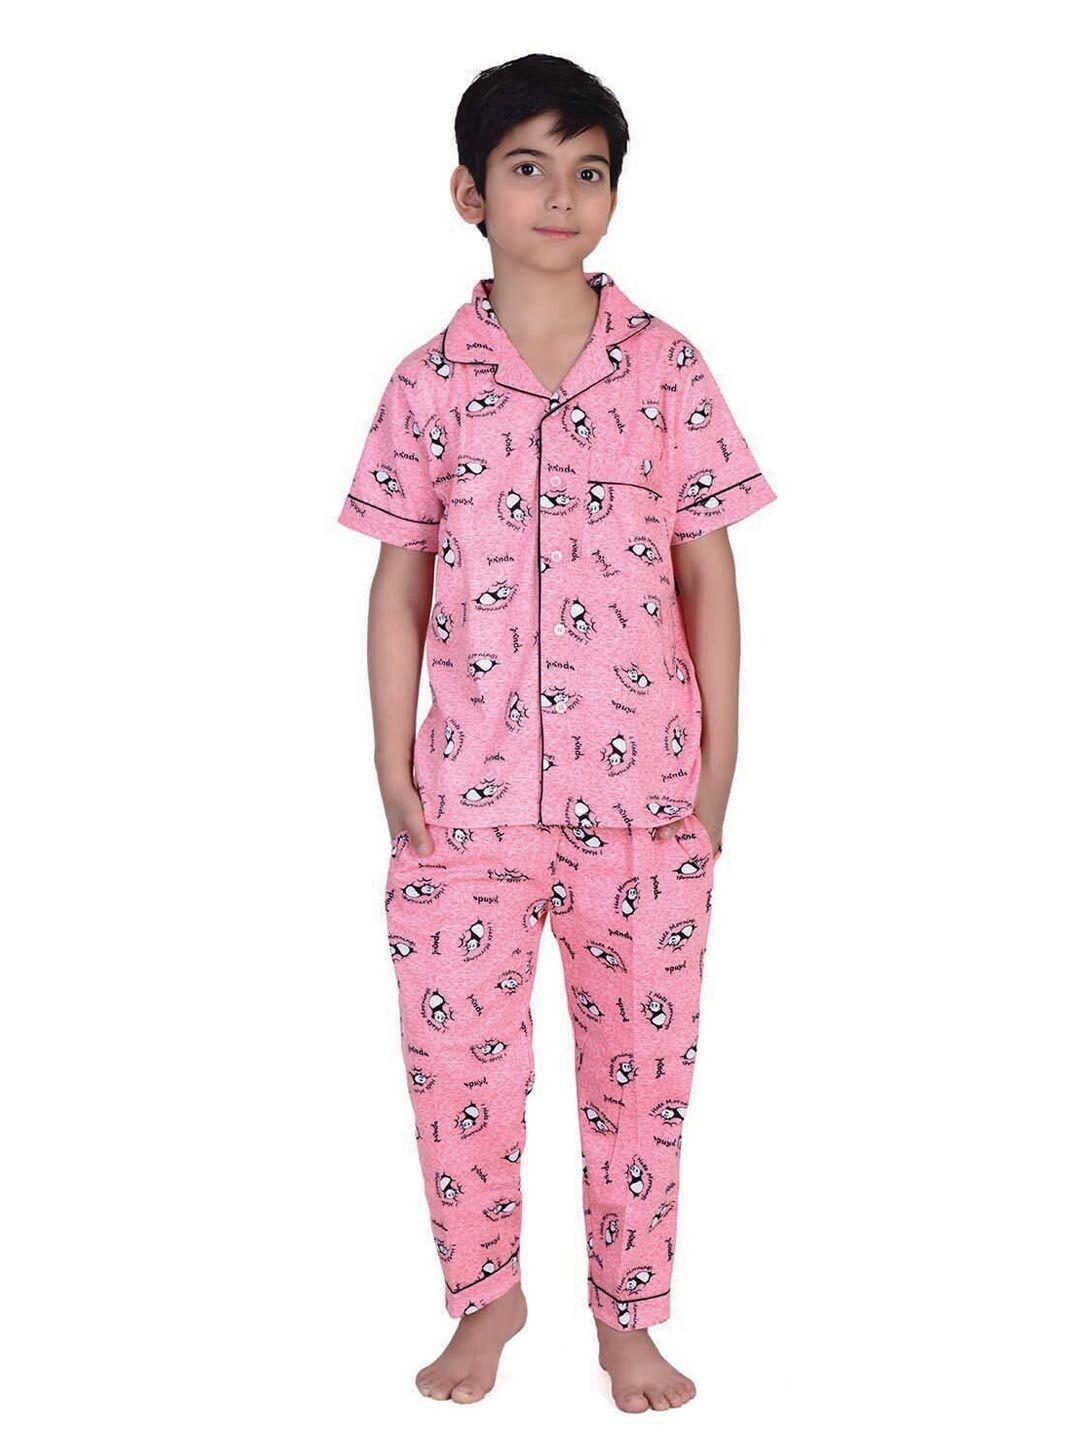 zoom minimondo unisex kids pink & black panda printed night suit